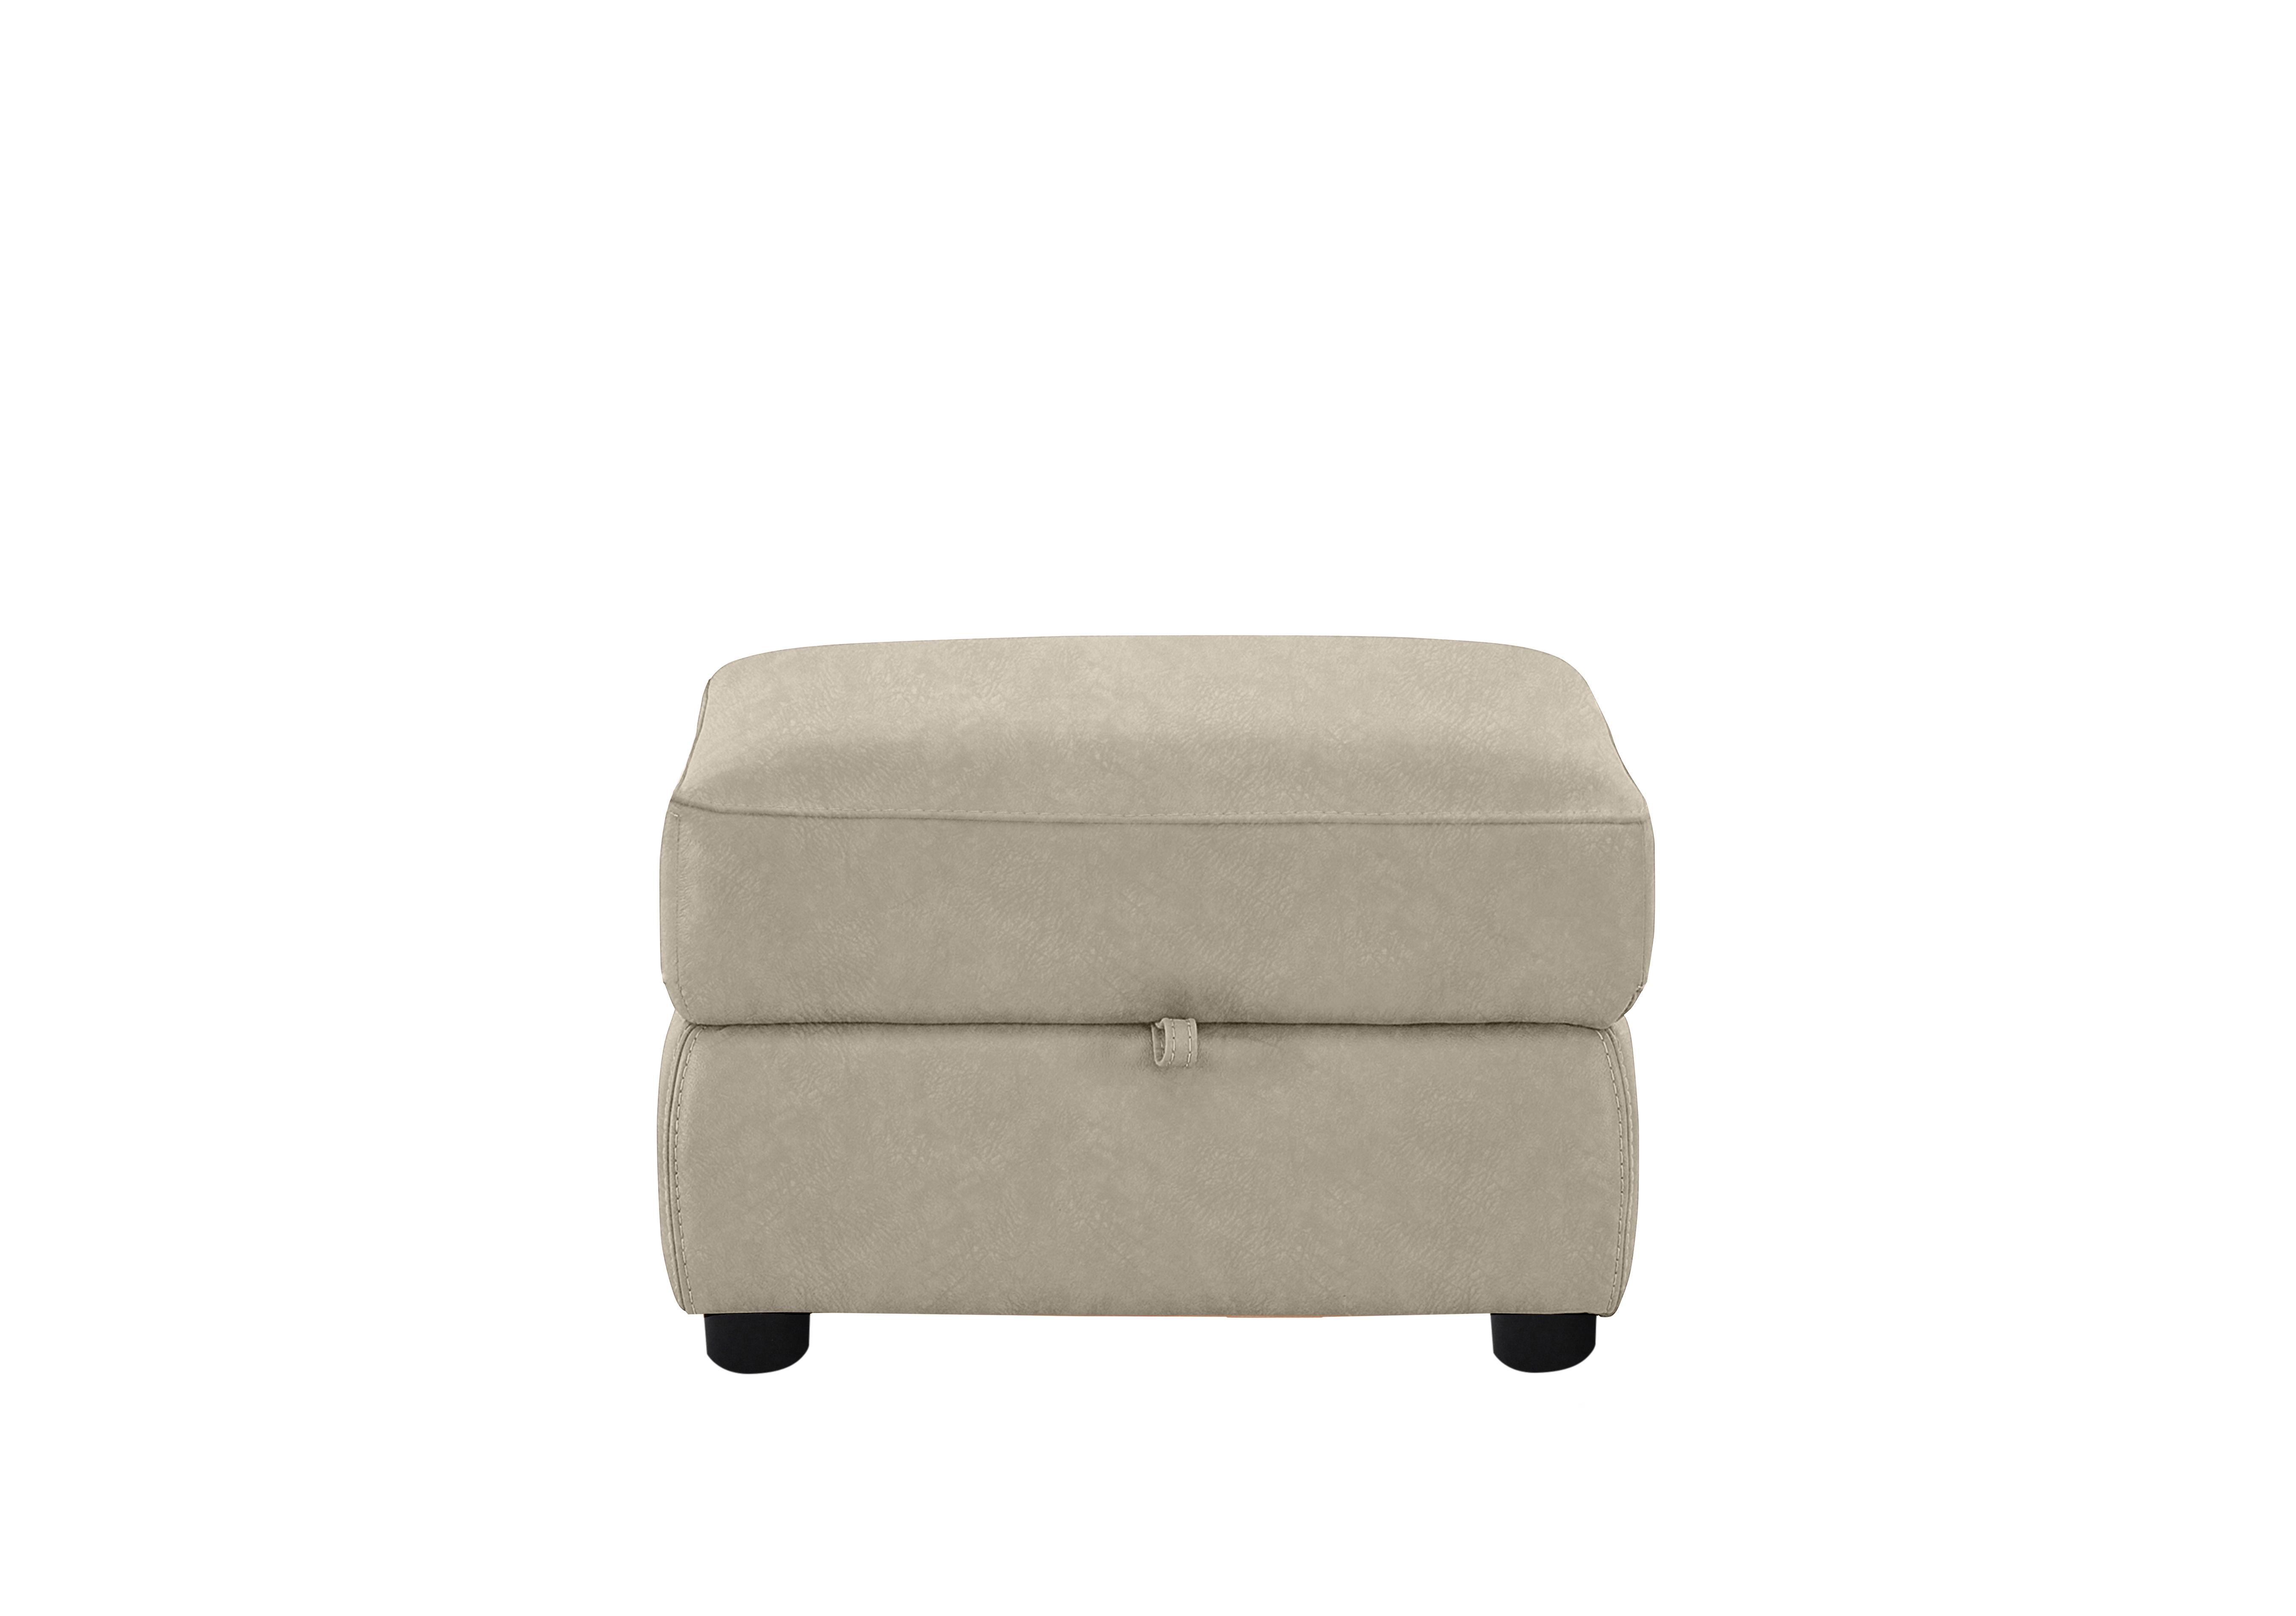 Snug Fabric Storage Footstool in Bfa-Bnn-R26 Fv2 Cream on Furniture Village